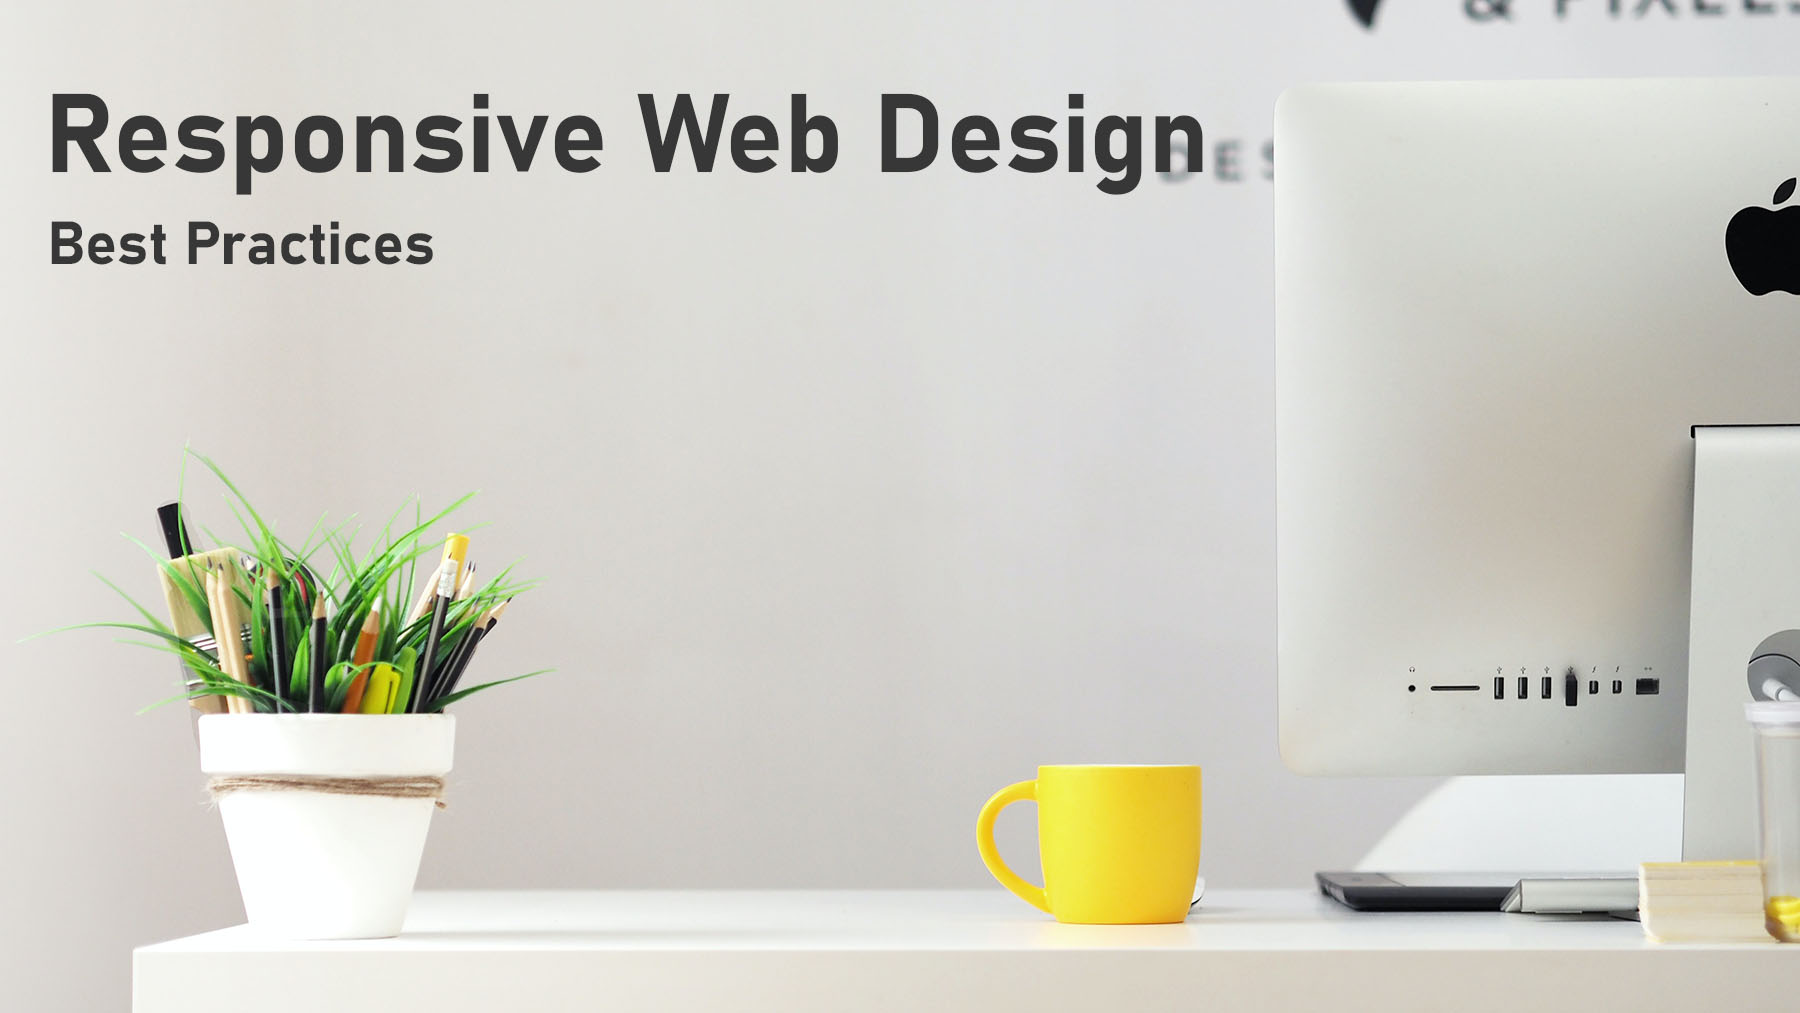 responsive web design header image computer on desk